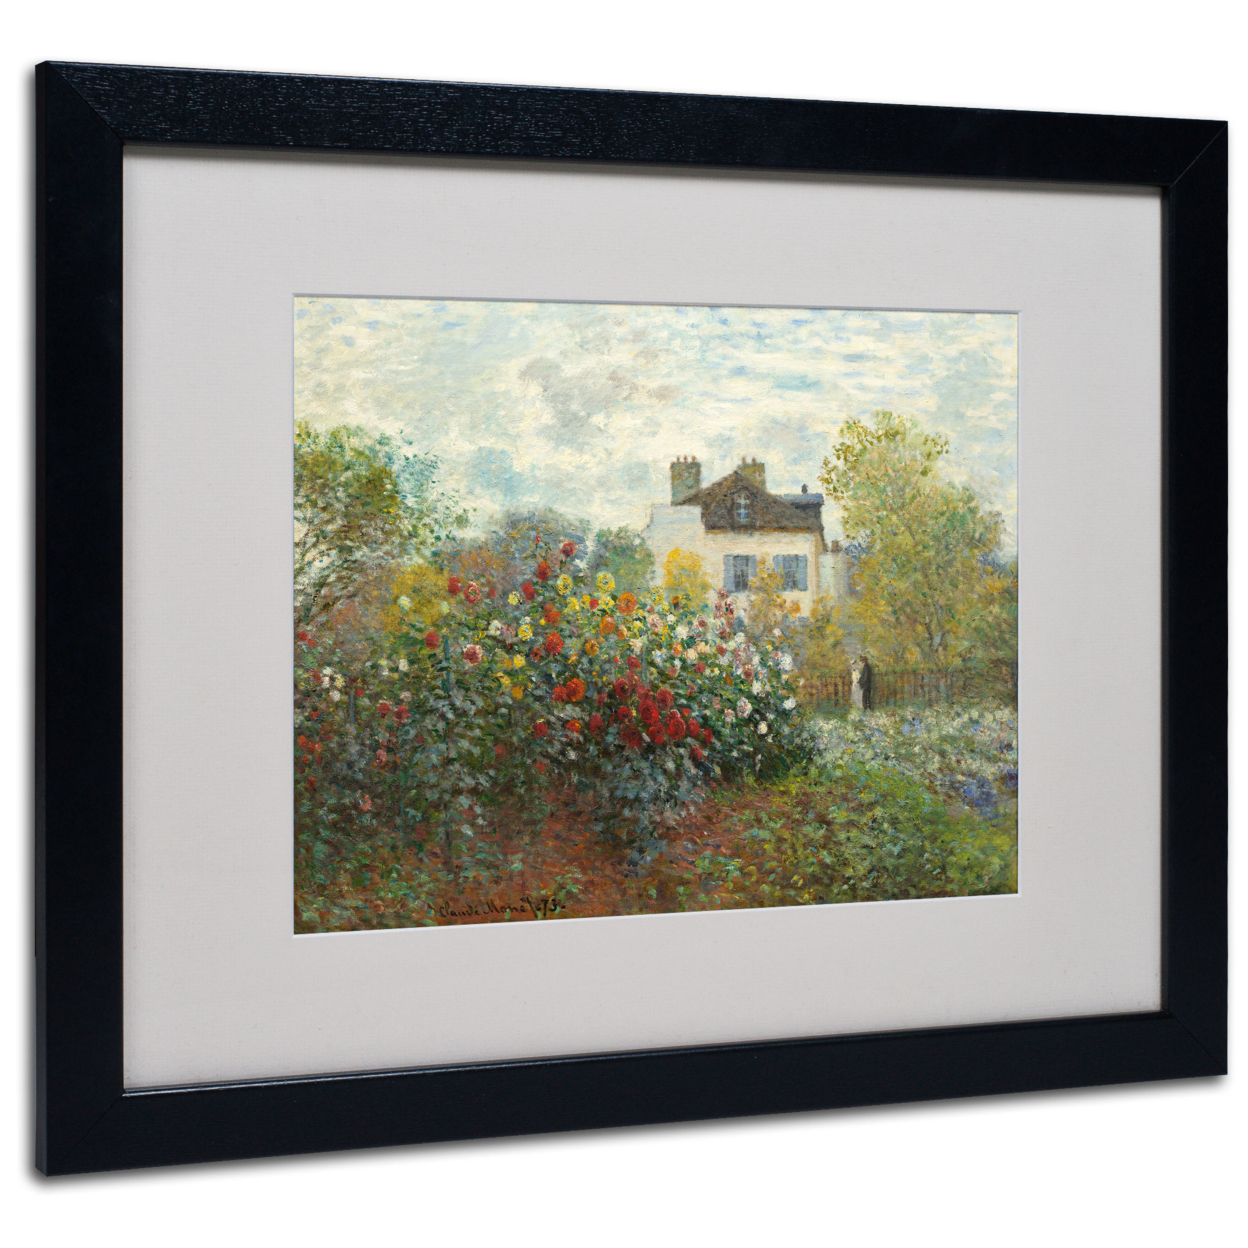 Claude Monet 'The Artist's Garden' Black Wooden Framed Art 18 X 22 Inches